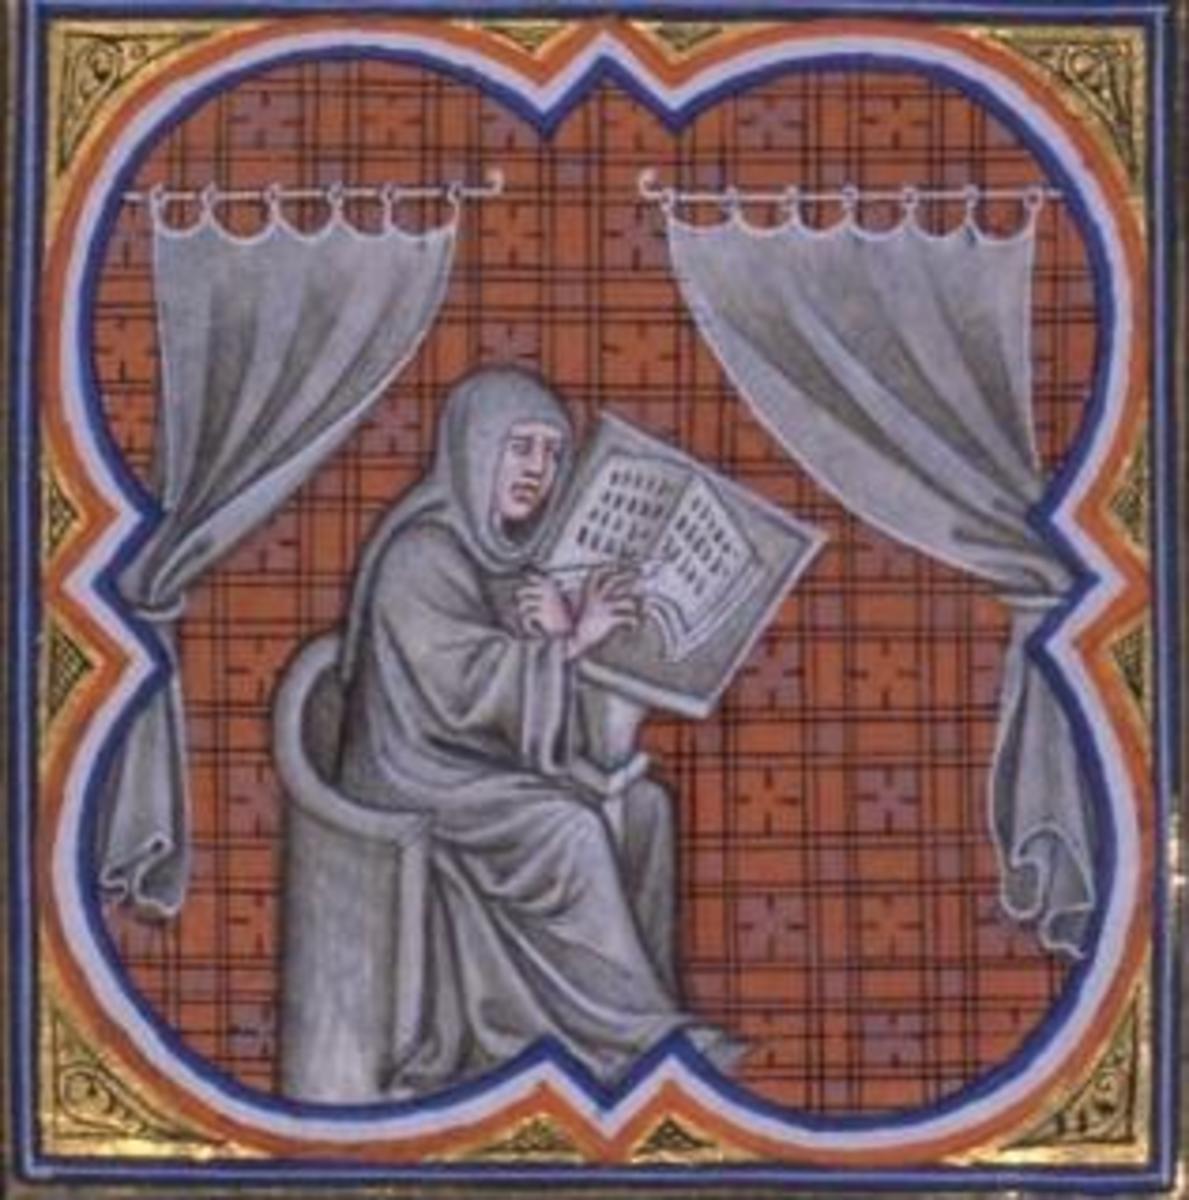 Einhard the scribe